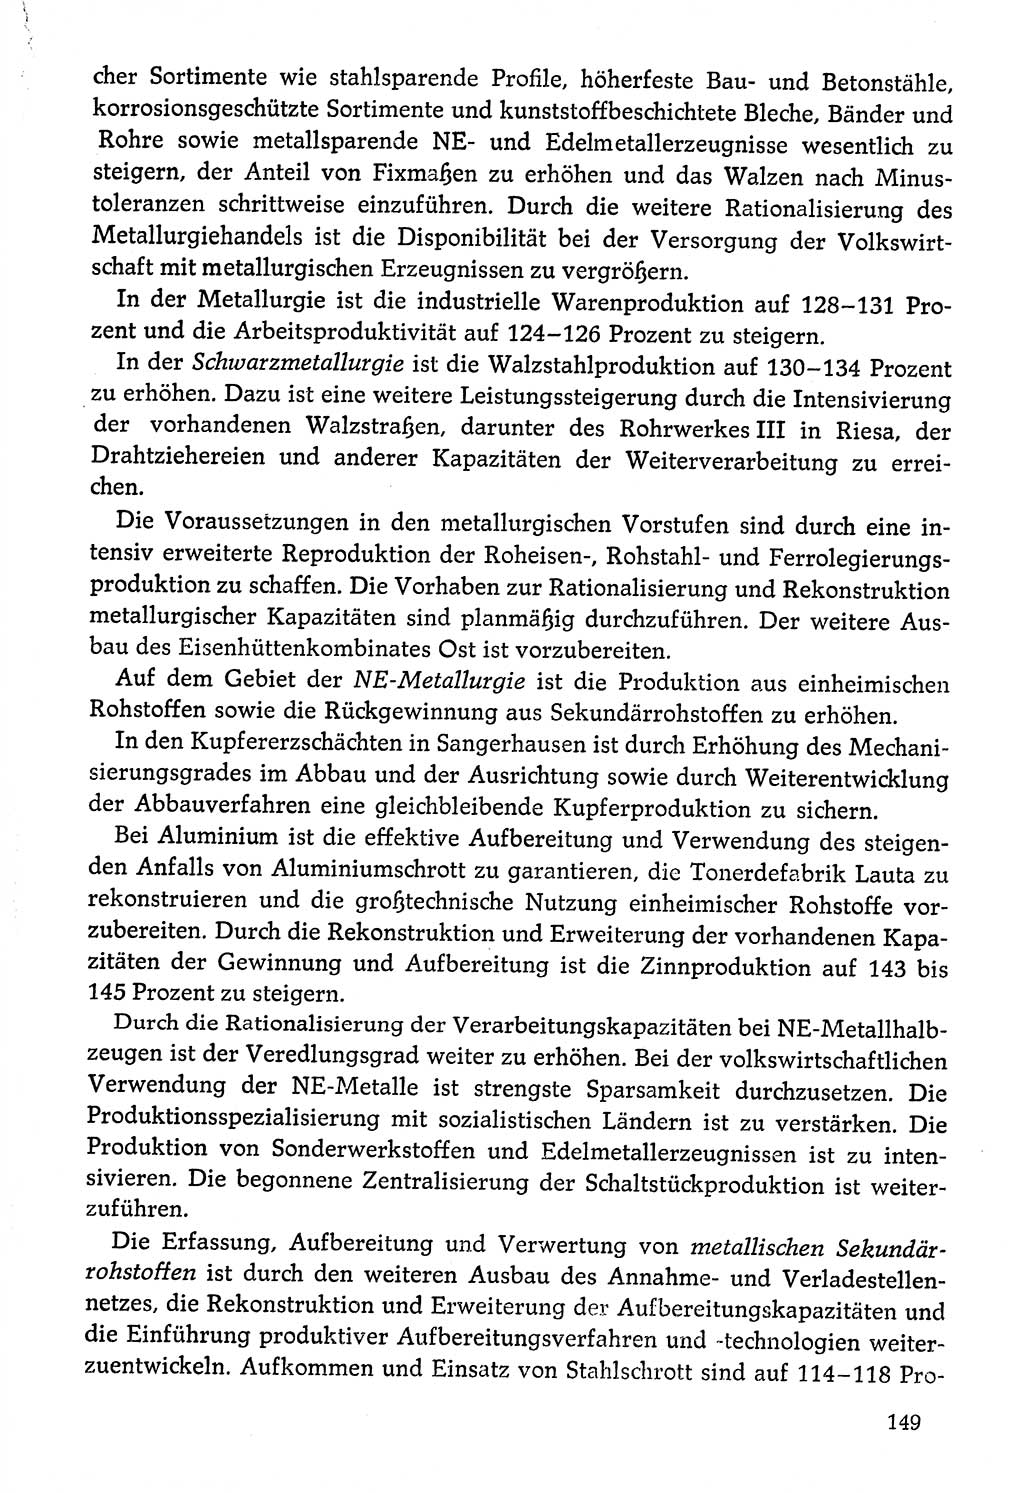 Dokumente der Sozialistischen Einheitspartei Deutschlands (SED) [Deutsche Demokratische Republik (DDR)] 1976-1977, Seite 149 (Dok. SED DDR 1976-1977, S. 149)